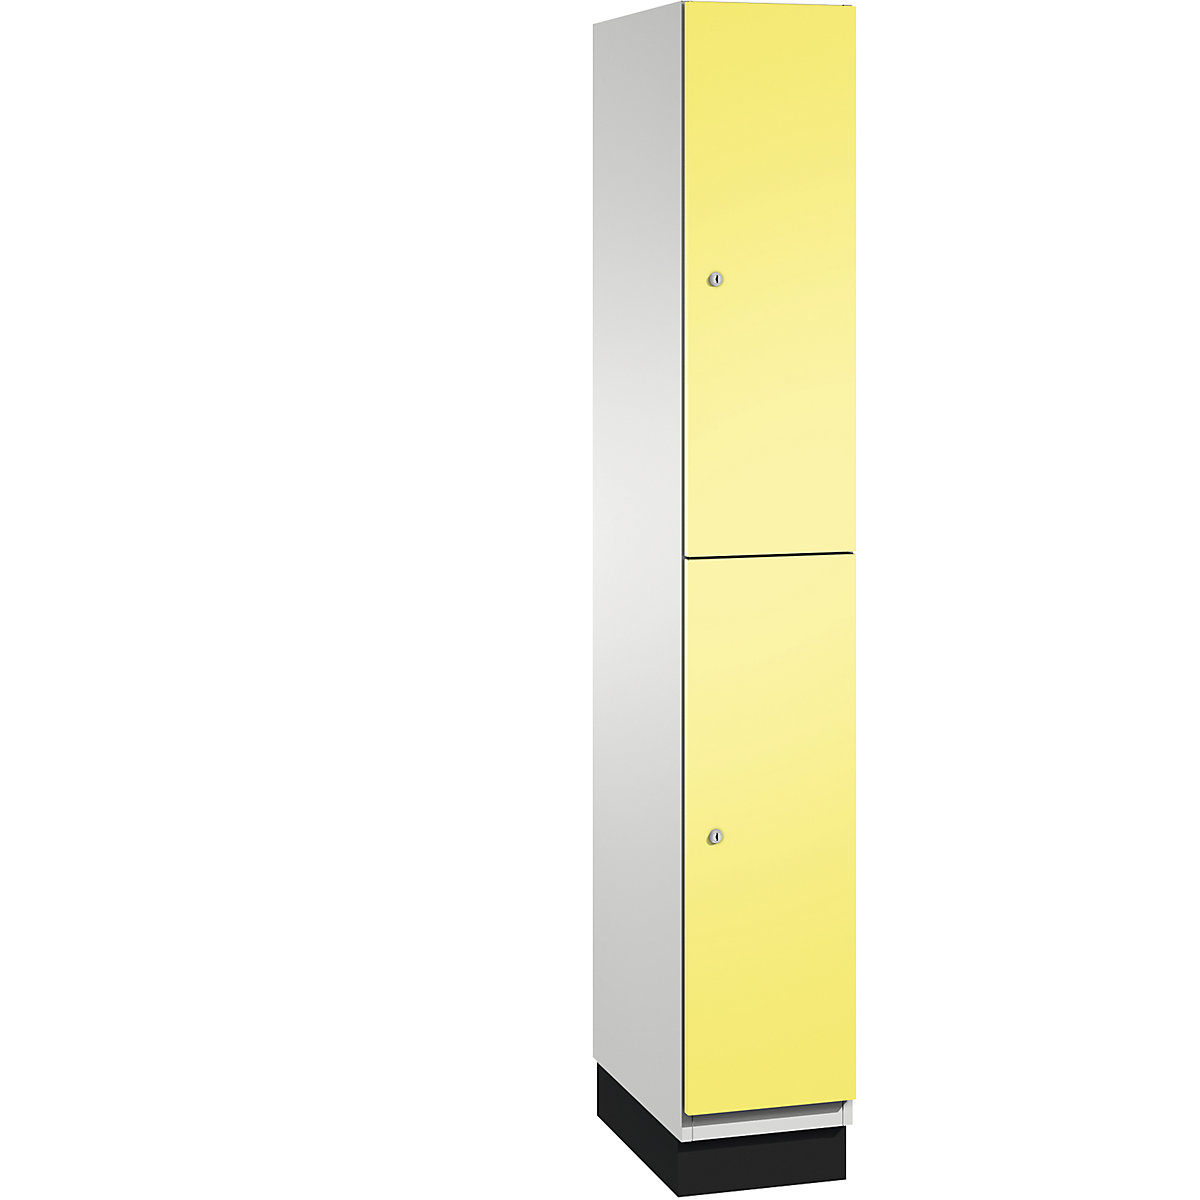 C+P – Skříň s boxy CAMBIO s tyčí na oděvy, 2 boxy, korpus světlý šedý / dveře sírové žluté, šířka 300 mm